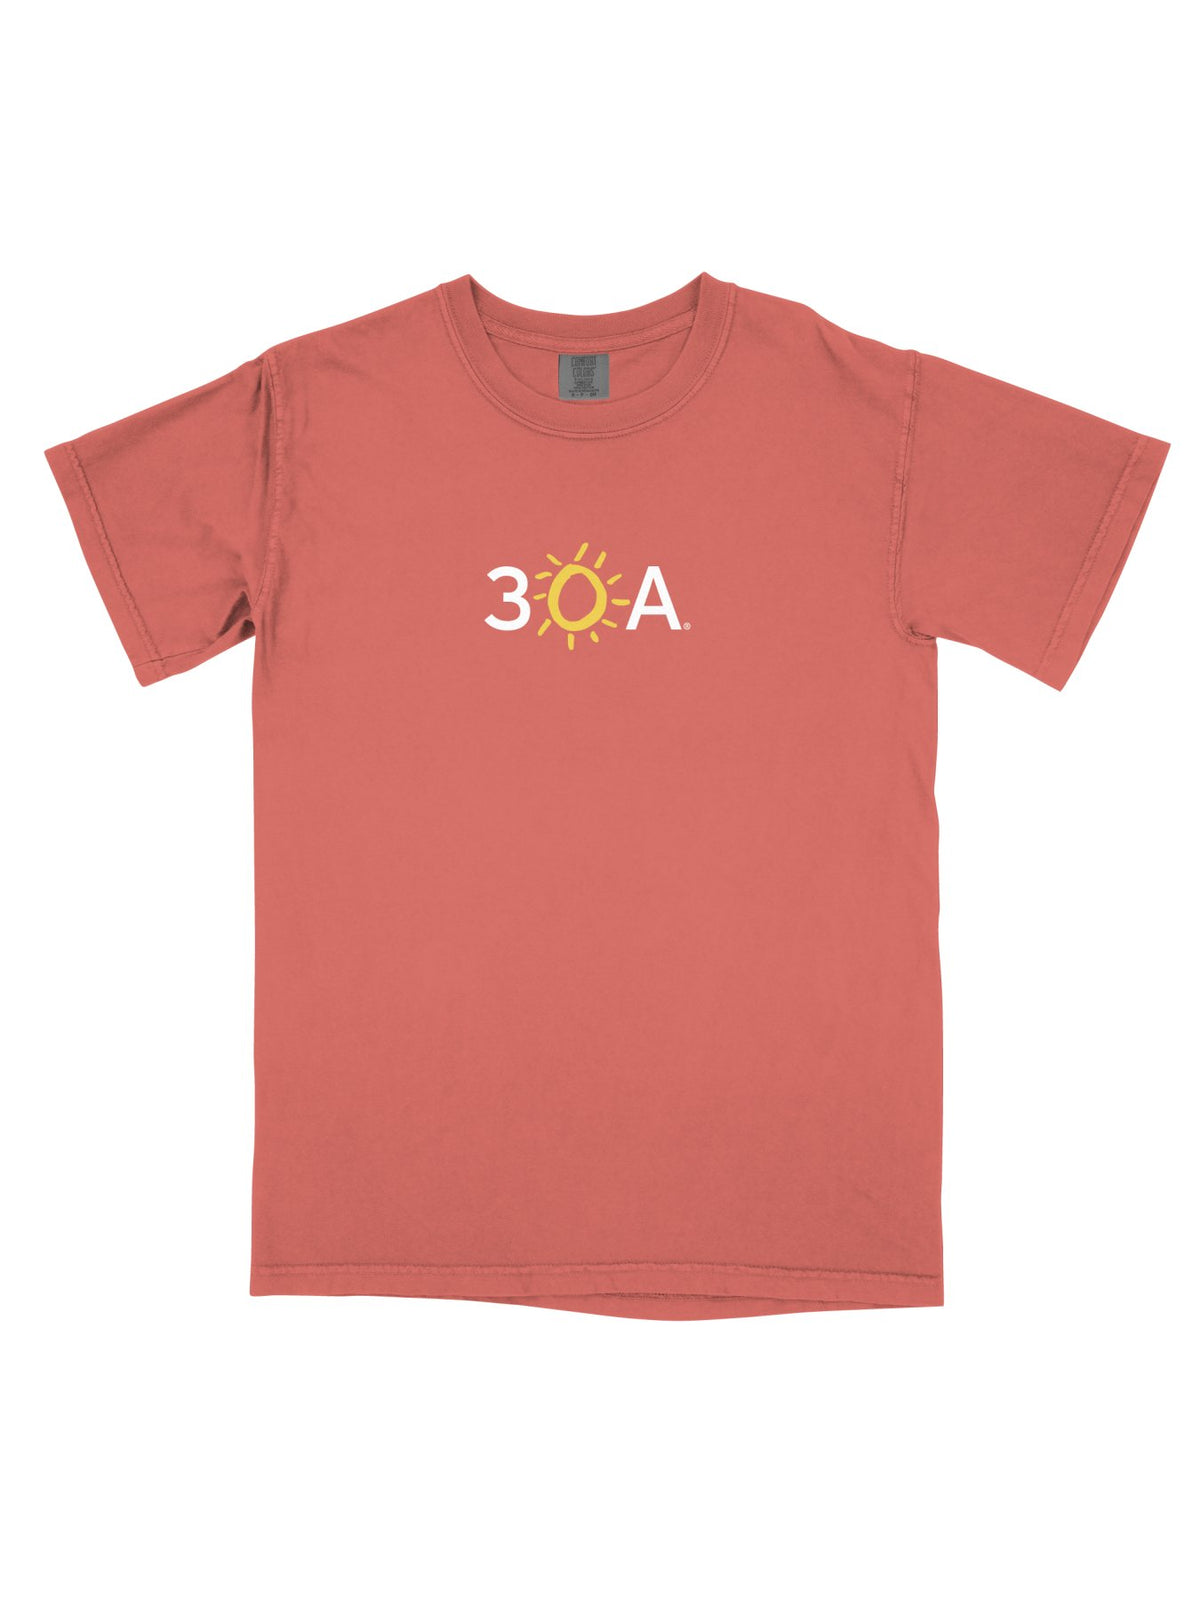 30A Logo Comfort Colors T - Shirt - 30A Gear - men tee